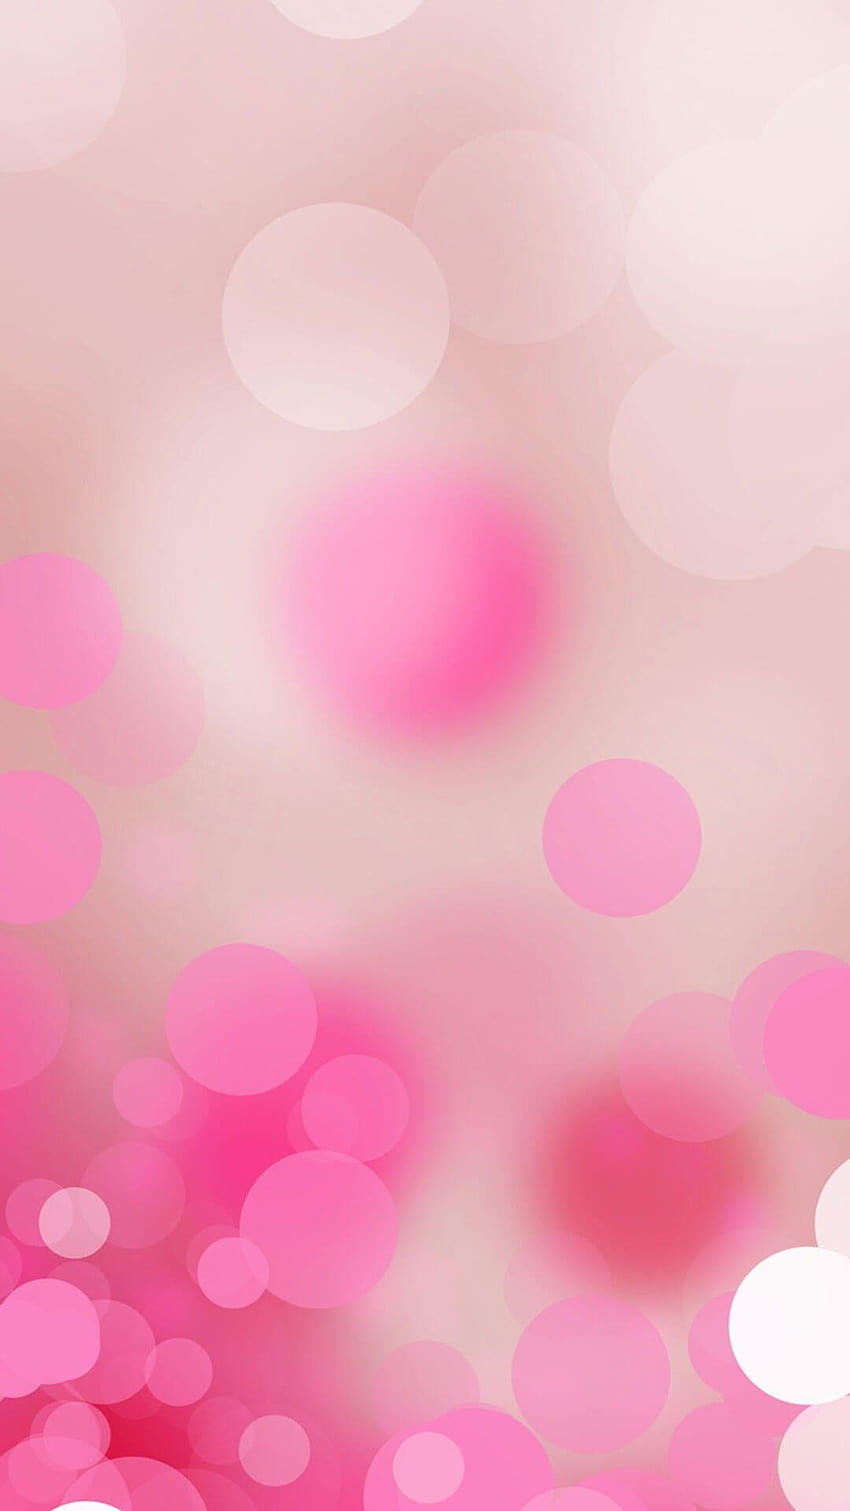 IPhone Tumblr ·① cool High Resolution, background pink lucu HD - Hình nền Pink Lucu HD sẽ đưa trải nghiệm trải nghiệm của bạn trên điện thoại hay máy tính bảng lên một tầm cao mới. Hình ảnh pha trộn giữa cách thiết kế cá tính và sắc hồng hiện đại sẽ làm cho chiếc điện thoại của bạn thật khác biệt và ấn tượng.